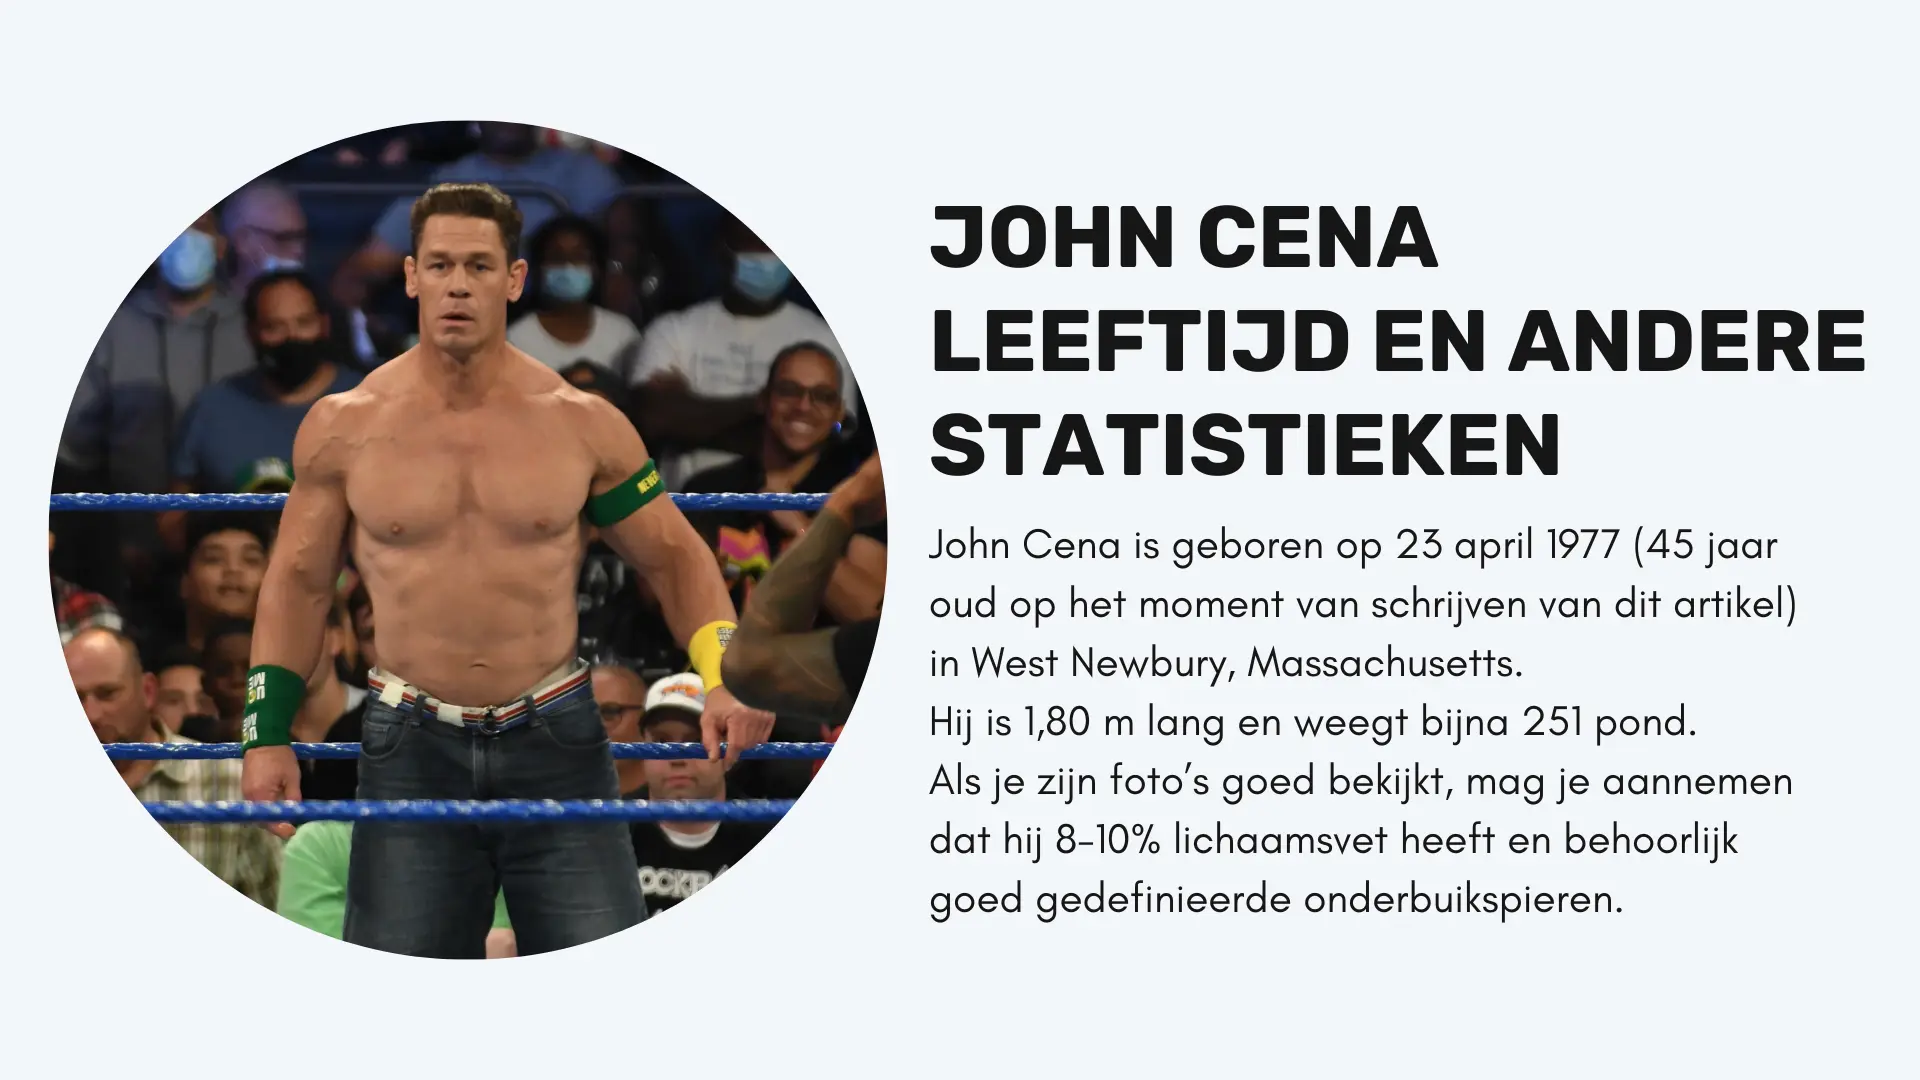 John Cena Leeftijd en andere statistieken